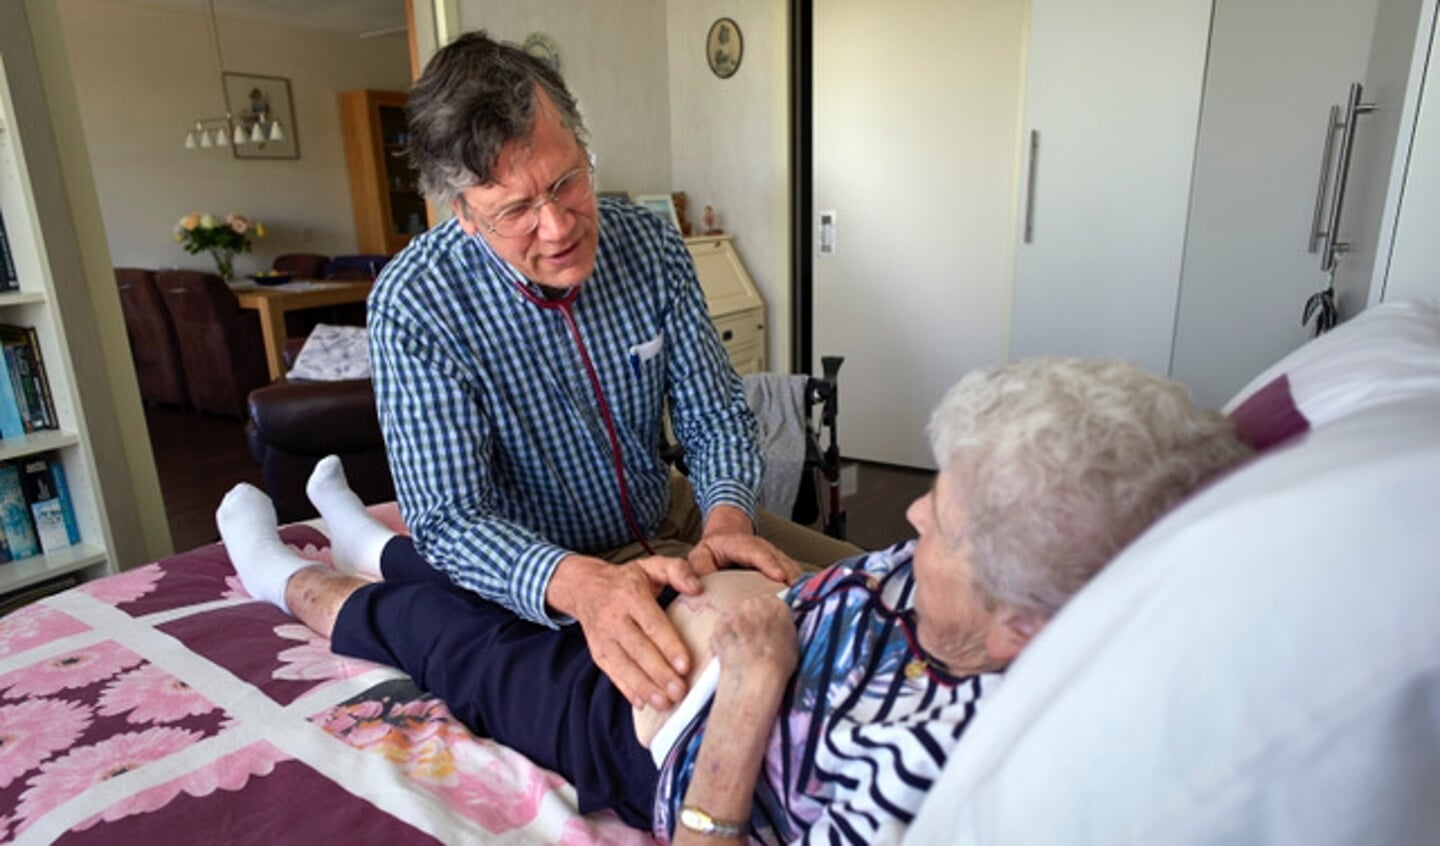 Huisarts Ferdinand Schreuder onderzoekt de buik van een oudere vrouw tijdens een visite (Foto: Roel Visser)